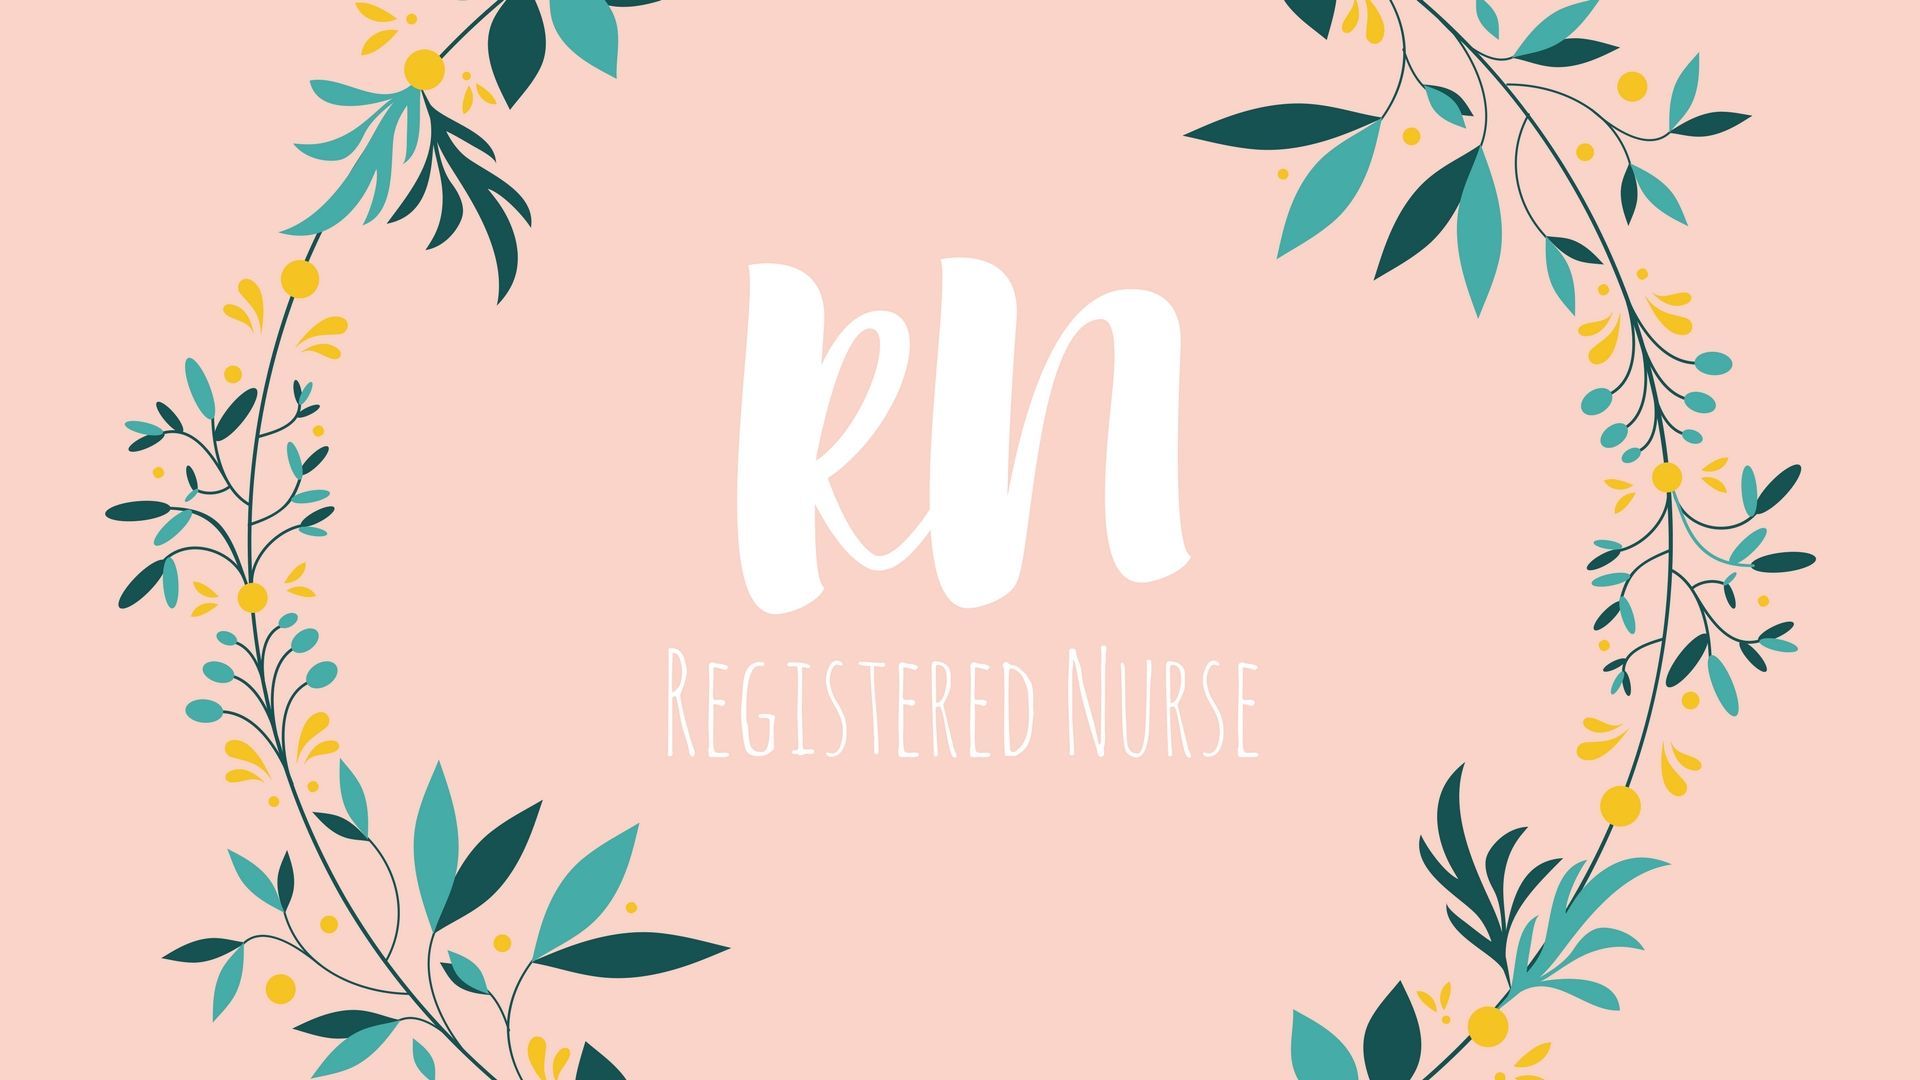 RN wallpaper, Facebook cover, twitter cover. #RN #Nurse #RegisteredNurse. Best stethoscope for nurses, Nurse aesthetic, Registered nurse